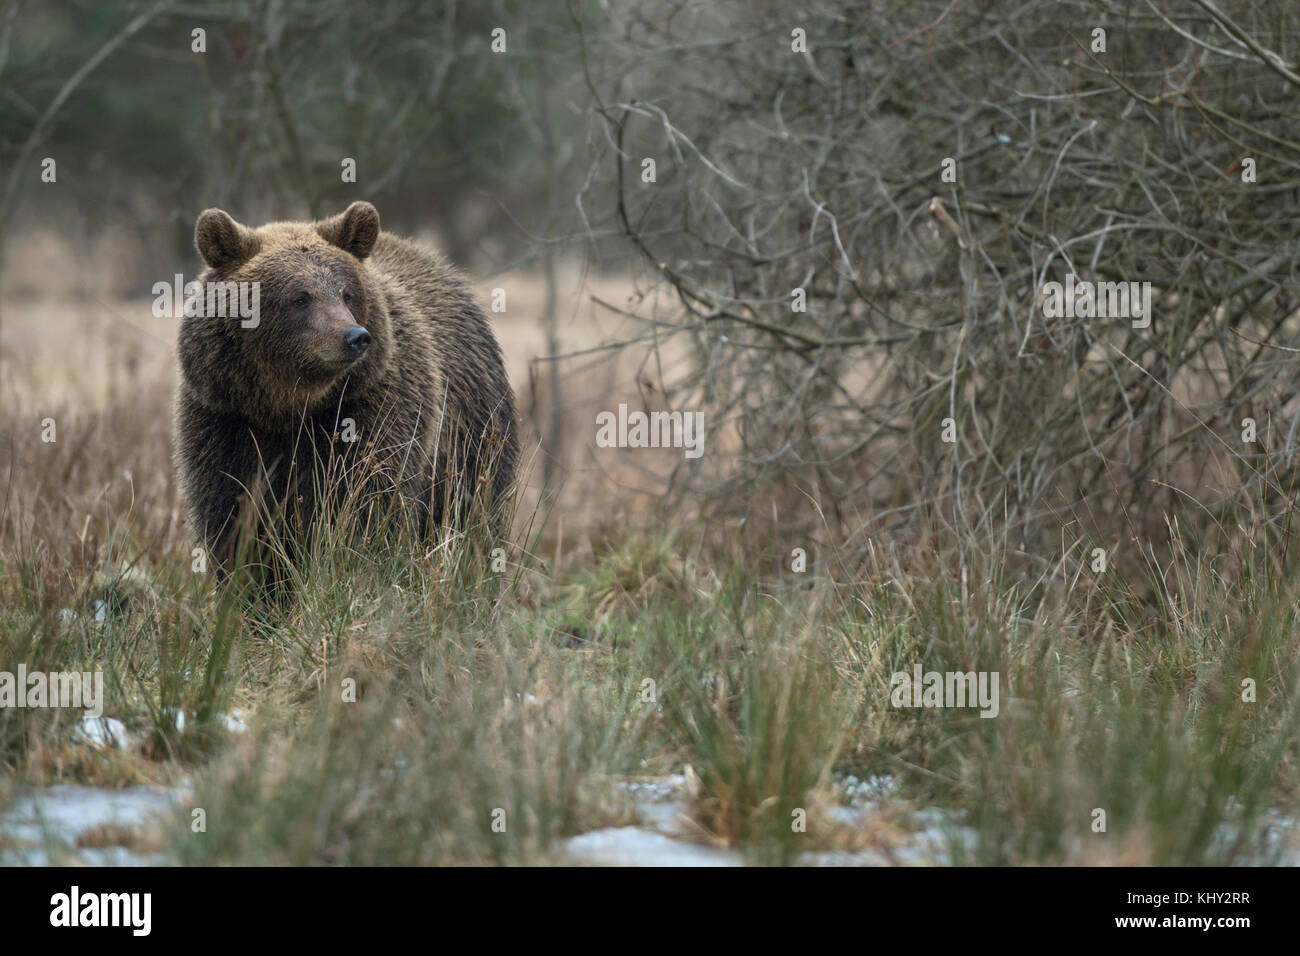 Eurasischer Braunbär / Braunbär ( Ursus arctos ), der durch ein Moorgebiet geht, neben einigen Sträuchern steht und beiseite schaut, Europa. Stockfoto